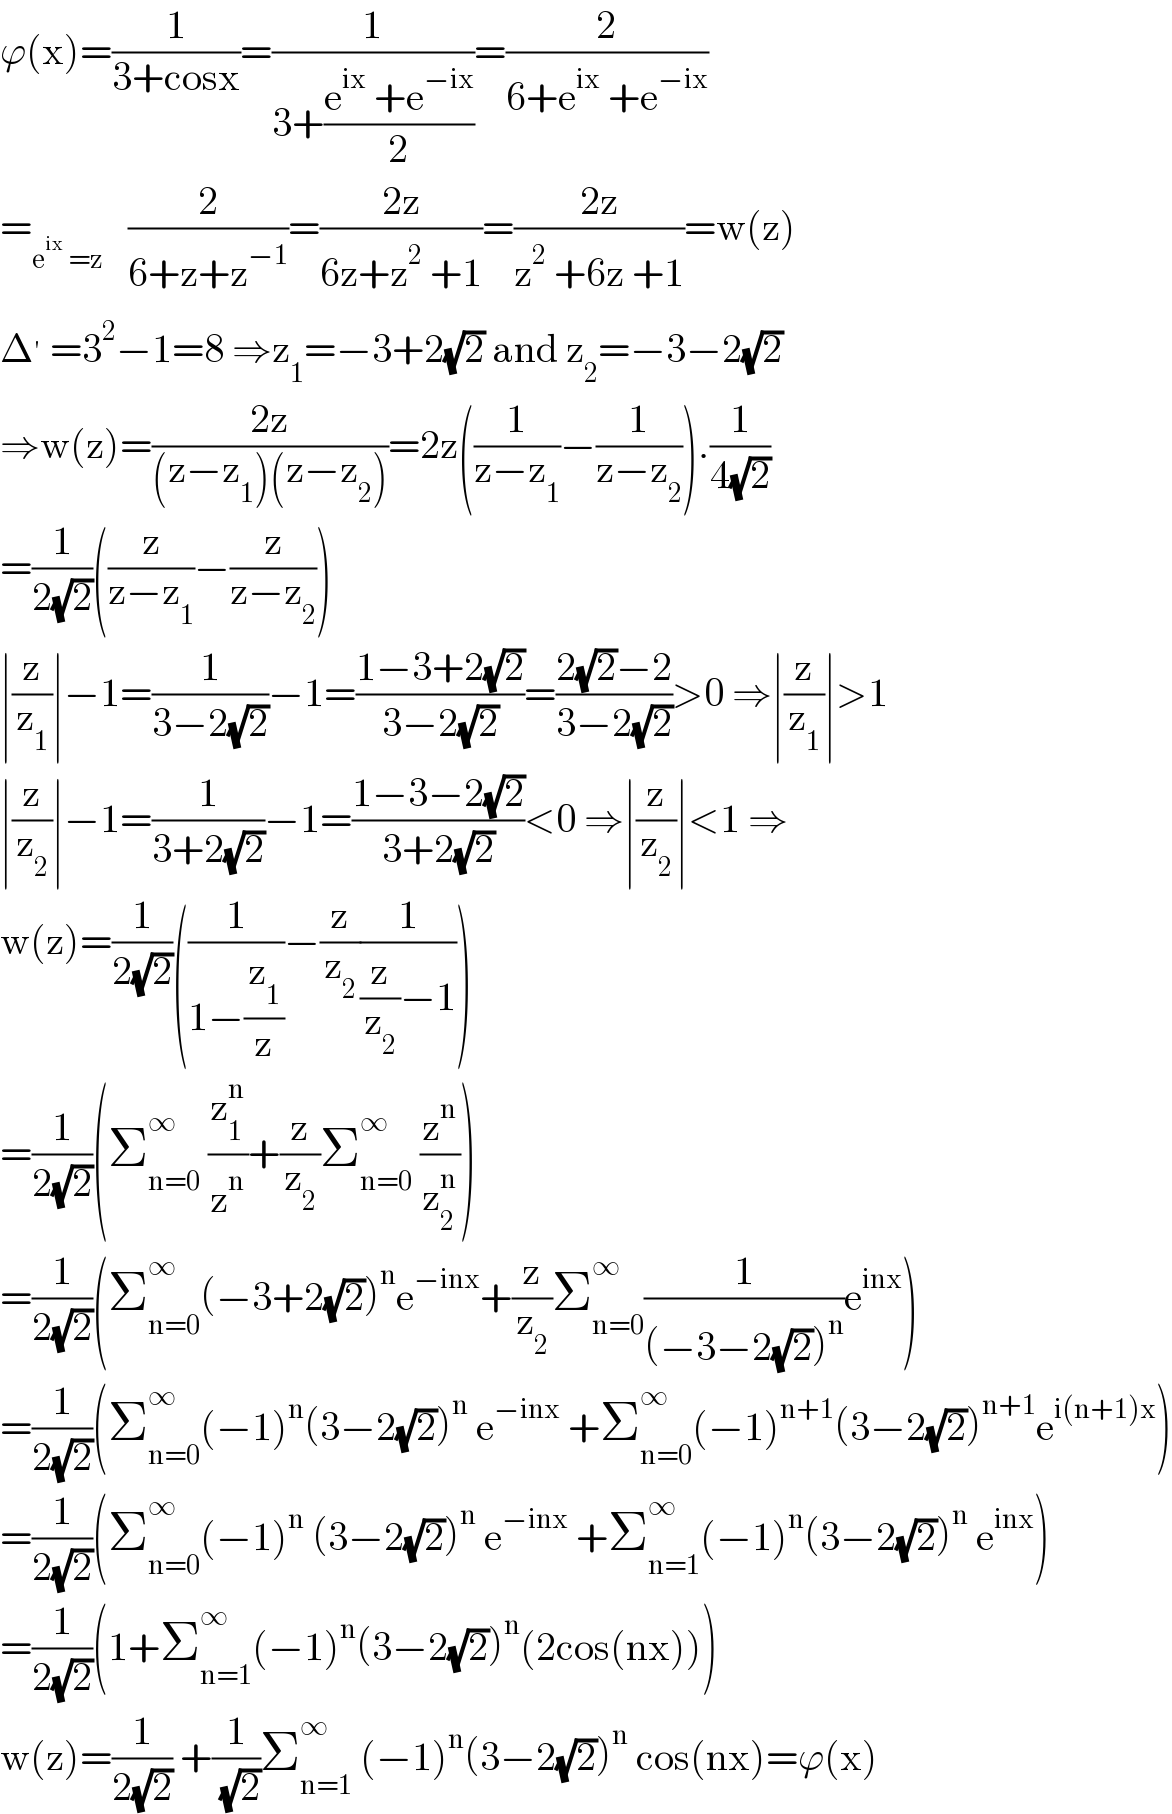 ϕ(x)=(1/(3+cosx))=(1/(3+((e^(ix)  +e^(−ix) )/2)))=(2/(6+e^(ix)  +e^(−ix) ))  =_(e^(ix)  =z)    (2/(6+z+z^(−1) ))=((2z)/(6z+z^2  +1))=((2z)/(z^2  +6z +1))=w(z)  Δ^′  =3^2 −1=8 ⇒z_1 =−3+2(√2) and z_2 =−3−2(√2)  ⇒w(z)=((2z)/((z−z_1 )(z−z_2 )))=2z((1/(z−z_1 ))−(1/(z−z_2 ))).(1/(4(√2)))  =(1/(2(√2)))((z/(z−z_1 ))−(z/(z−z_2 )))  ∣(z/z_1 )∣−1=(1/(3−2(√2)))−1=((1−3+2(√2))/(3−2(√2)))=((2(√2)−2)/(3−2(√2)))>0 ⇒∣(z/z_1 )∣>1  ∣(z/z_2 )∣−1=(1/(3+2(√2)))−1=((1−3−2(√2))/(3+2(√2)))<0 ⇒∣(z/z_2 )∣<1 ⇒  w(z)=(1/(2(√2)))((1/(1−(z_1 /z)))−(z/z_2 )(1/((z/z_2 )−1)))  =(1/(2(√2)))(Σ_(n=0) ^∞  (z_1 ^n /z^n )+(z/z_2 )Σ_(n=0) ^∞  (z^n /z_2 ^n ))  =(1/(2(√2)))(Σ_(n=0) ^∞ (−3+2(√2))^n e^(−inx) +(z/z_2 )Σ_(n=0) ^∞ (1/((−3−2(√2))^n ))e^(inx) )  =(1/(2(√2)))(Σ_(n=0) ^∞ (−1)^n (3−2(√2))^n  e^(−inx)  +Σ_(n=0) ^∞ (−1)^(n+1) (3−2(√2))^(n+1) e^(i(n+1)x) )  =(1/(2(√2)))(Σ_(n=0) ^∞ (−1)^n  (3−2(√2))^n  e^(−inx)  +Σ_(n=1) ^∞ (−1)^n (3−2(√2))^n  e^(inx) )  =(1/(2(√2)))(1+Σ_(n=1) ^∞ (−1)^n (3−2(√2))^n (2cos(nx)))  w(z)=(1/(2(√2))) +(1/( (√2)))Σ_(n=1) ^∞  (−1)^n (3−2(√2))^n  cos(nx)=ϕ(x)  